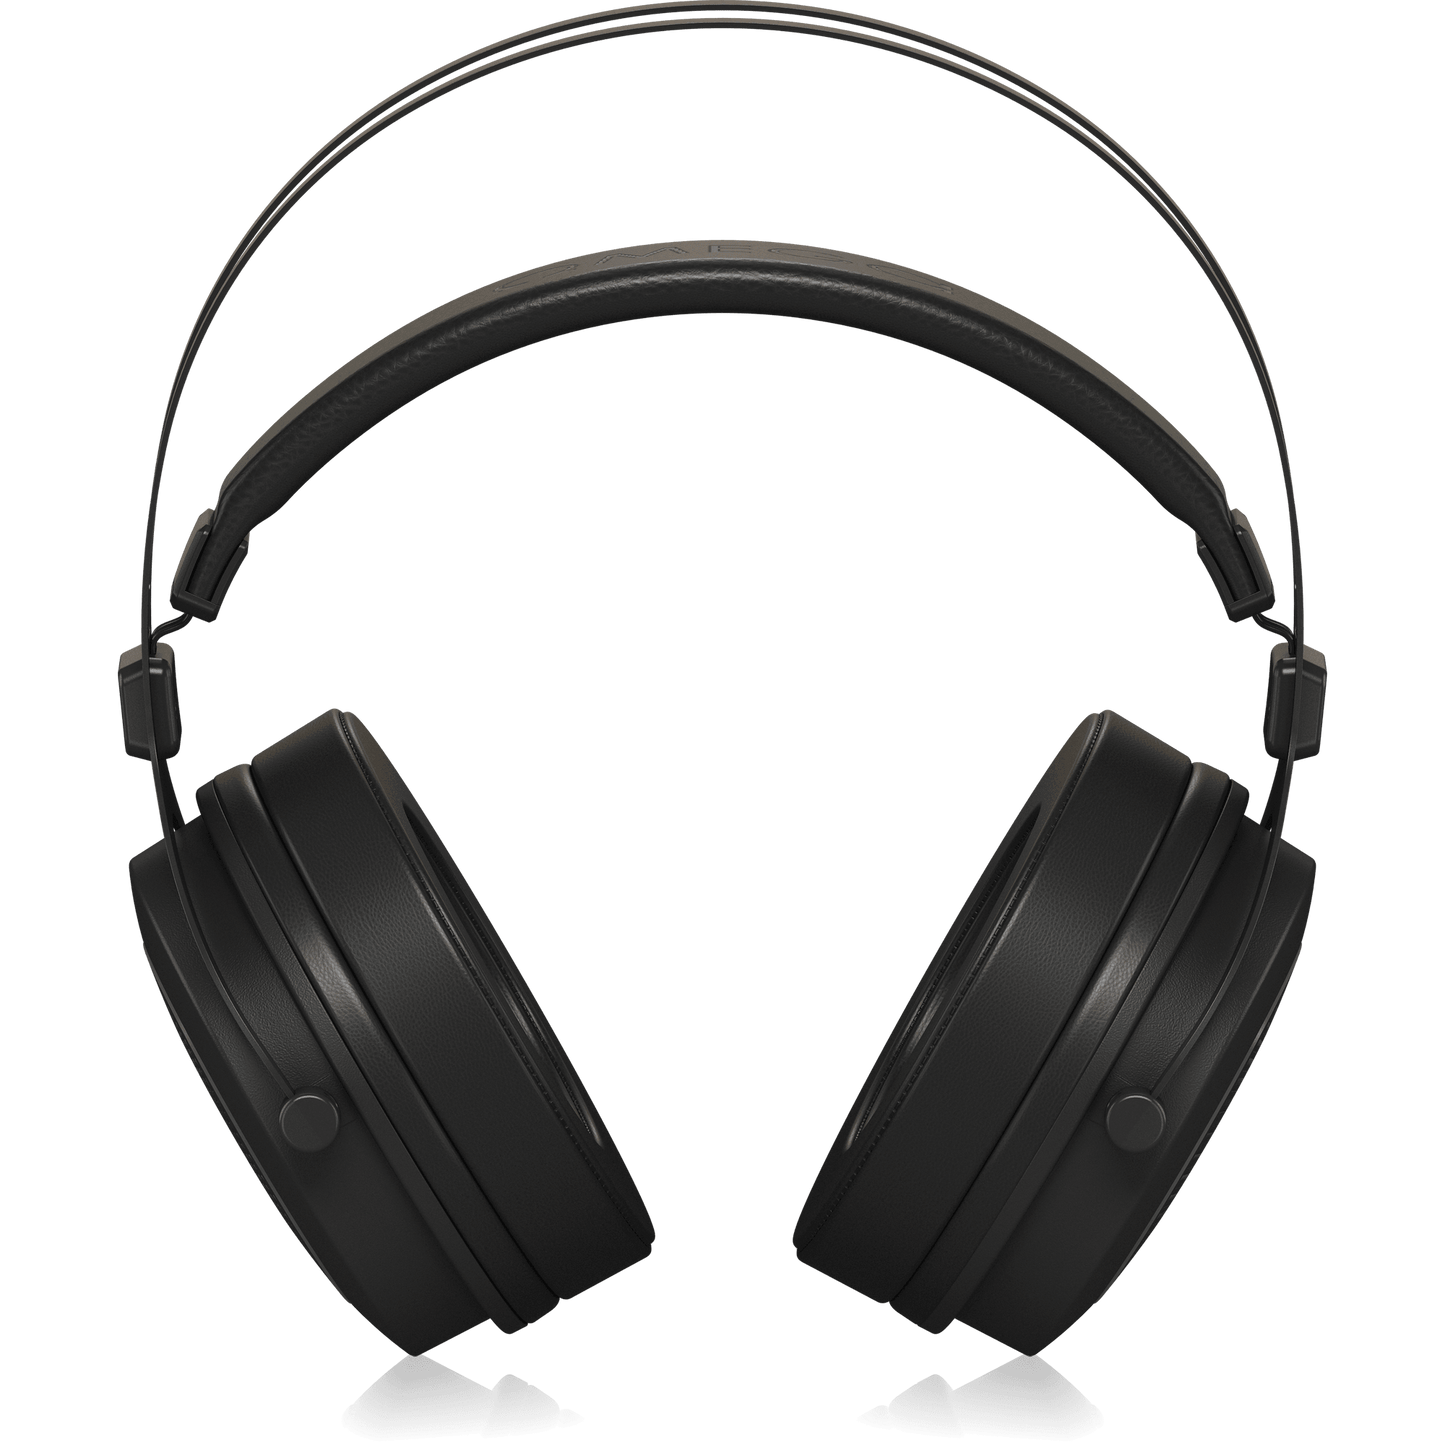 Behringer OMEGA Headphones Retro-Style Open-Back High-Fidelity